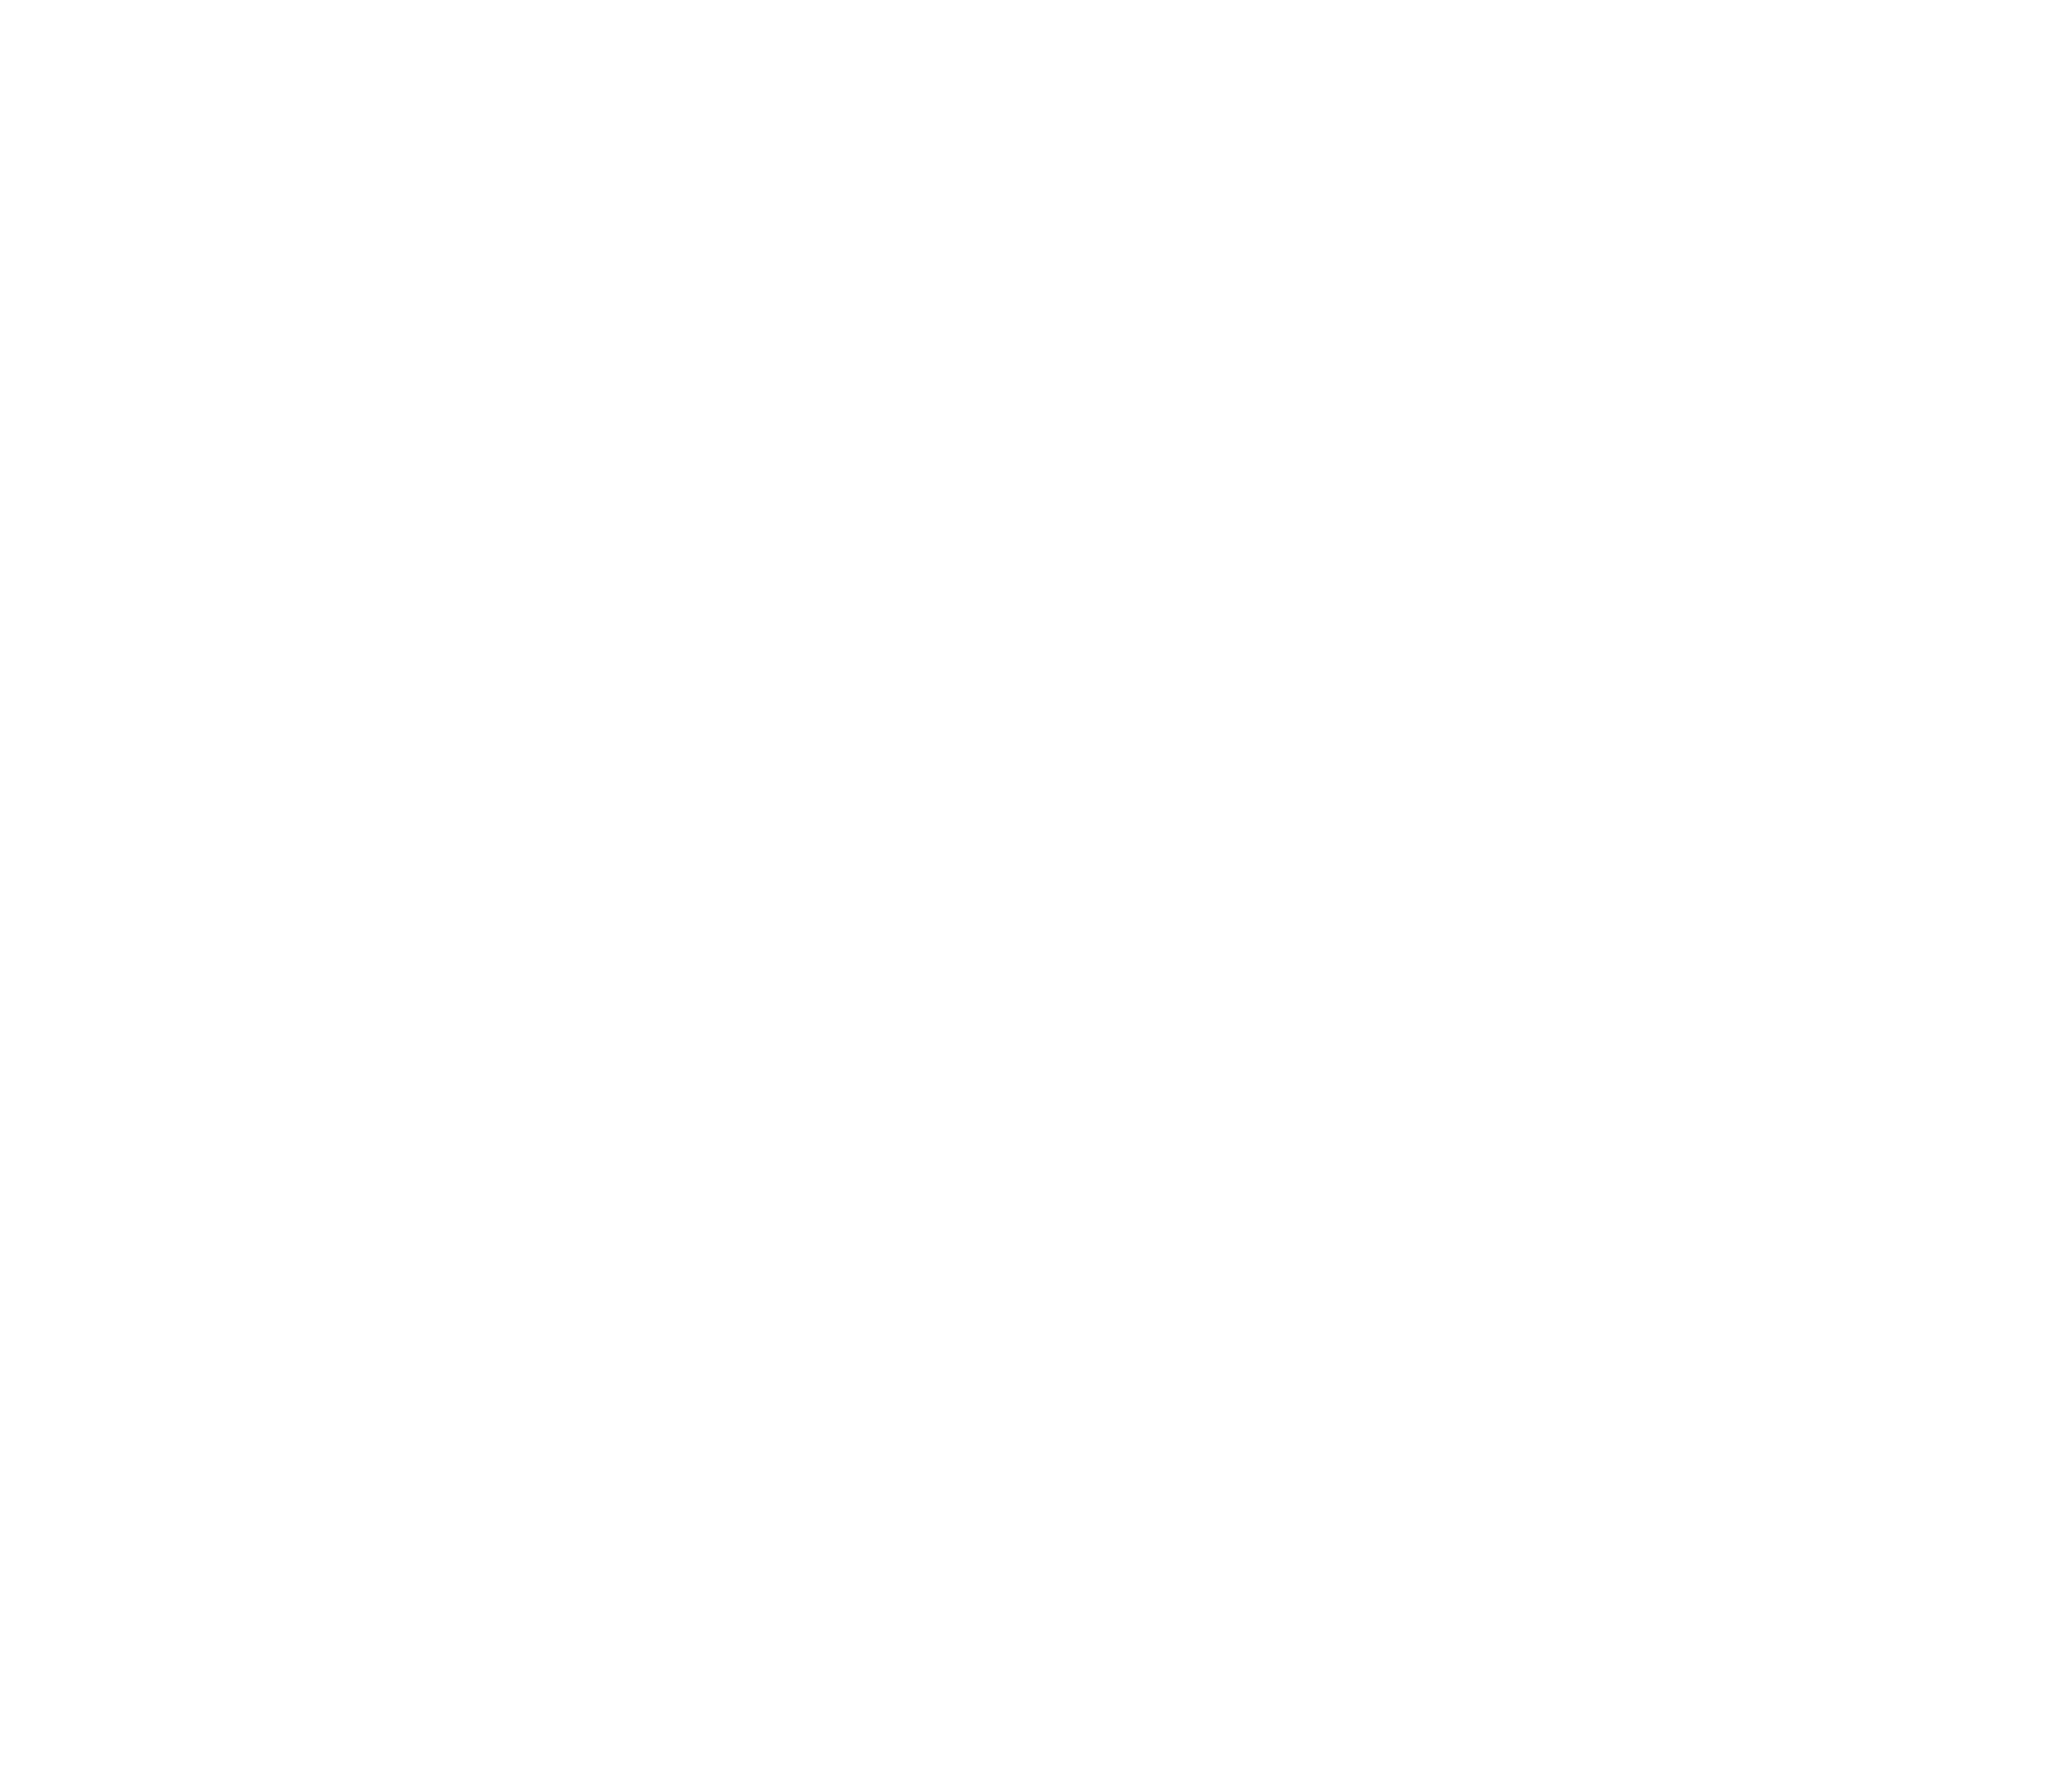 Epilepsy Foundation San Diego County